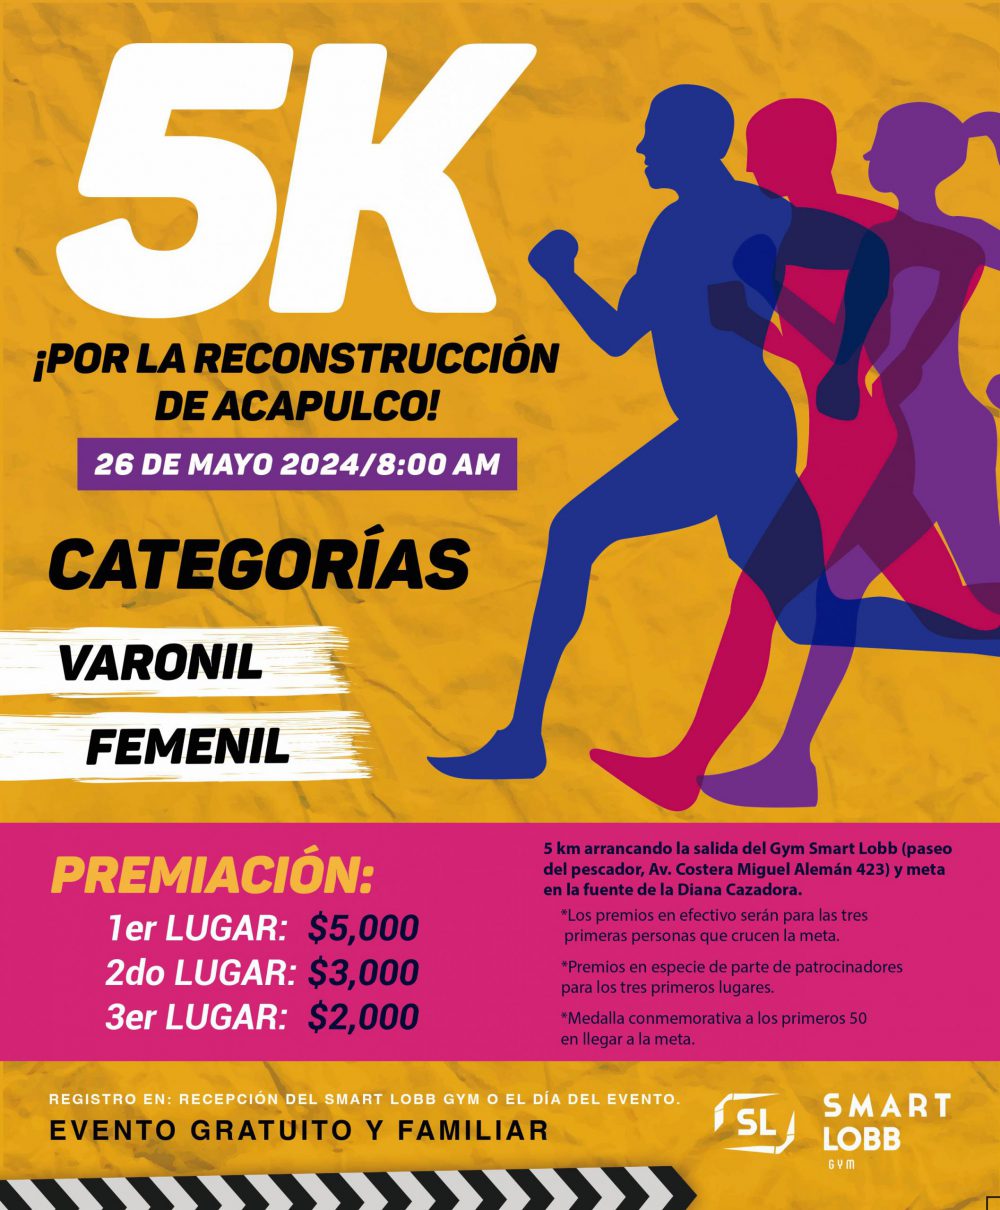 Regresan las actividades deportivas en Acapulco: “Carrera 5K Por la Reconstrucción de Acapulco” este domingo 26 de mayo.